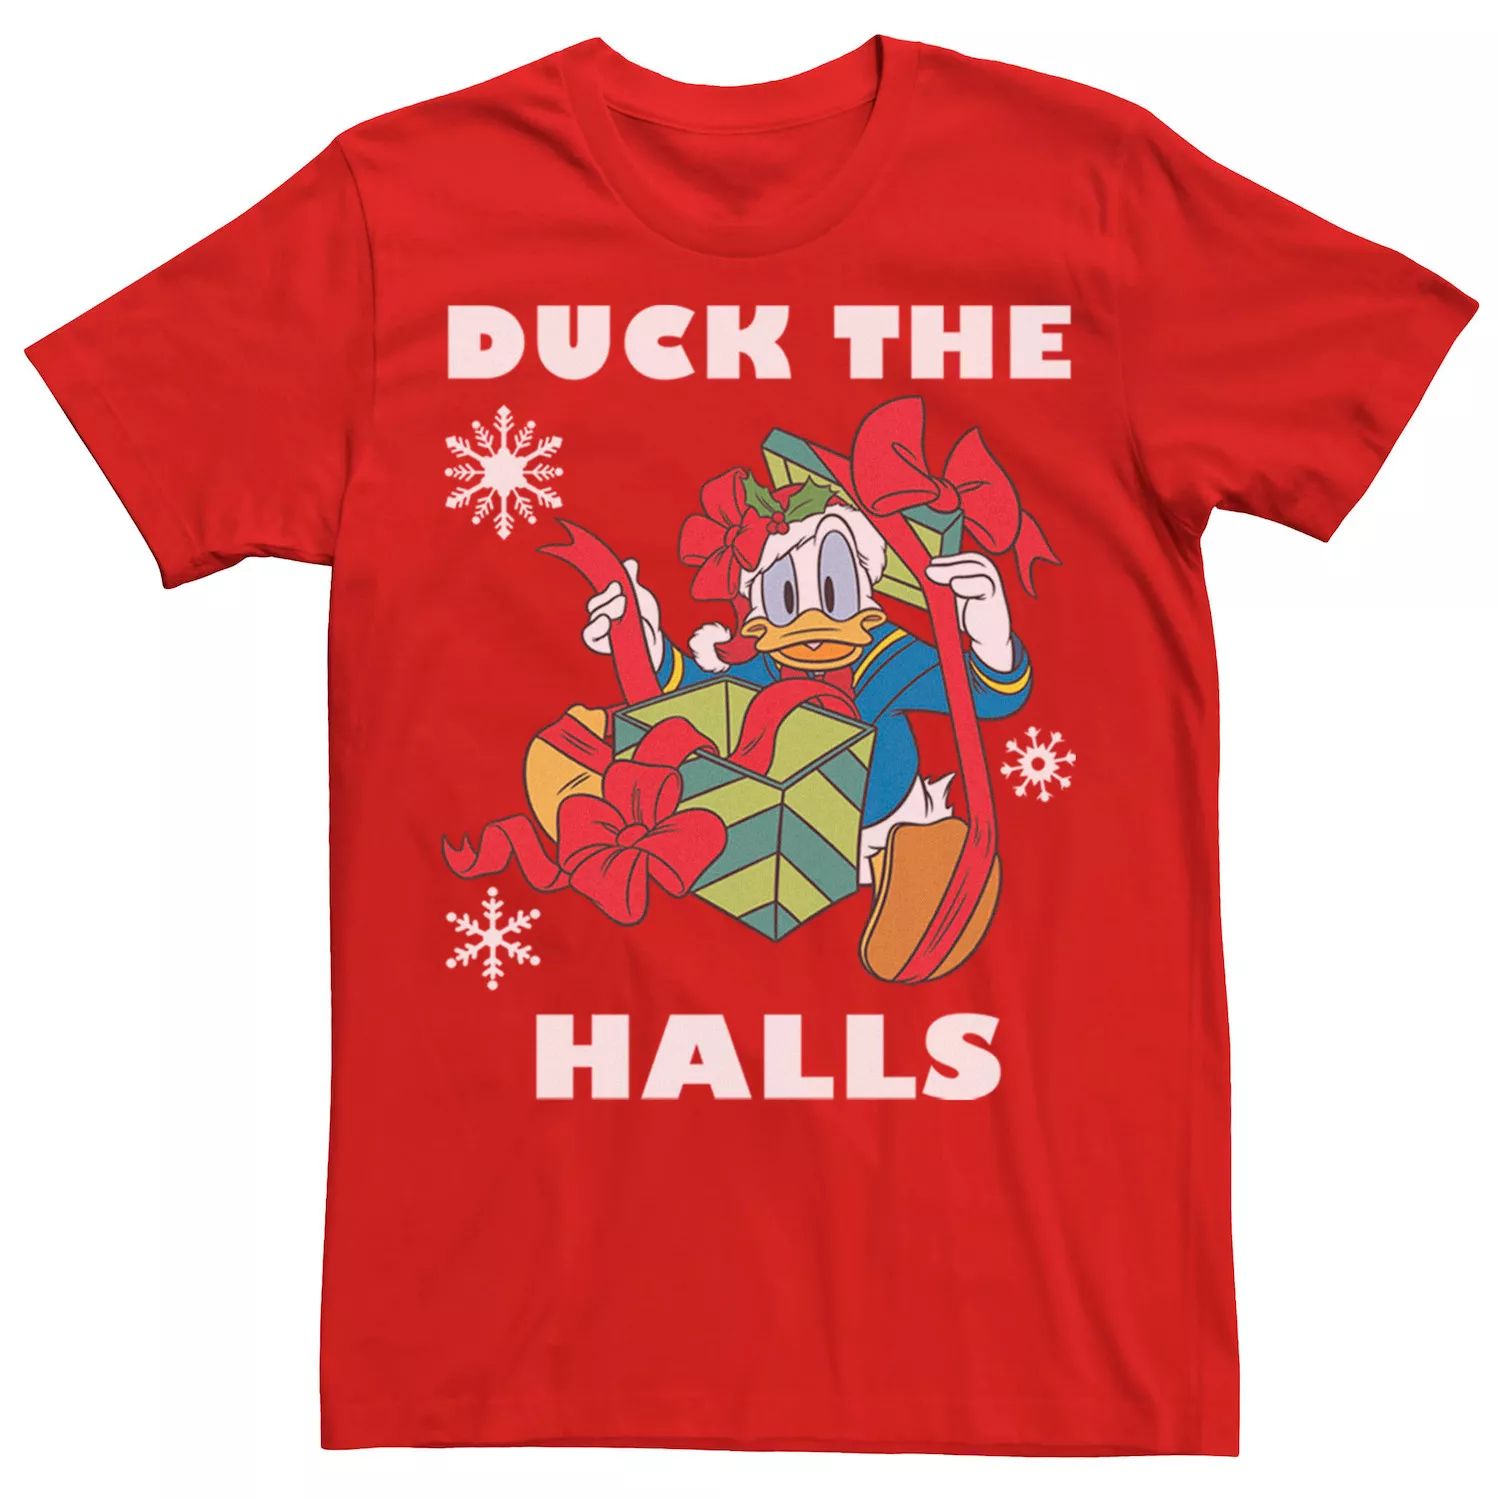 Мужская футболка Disney Donald Duck The Halls с рождественским портретом Licensed Character цена и фото